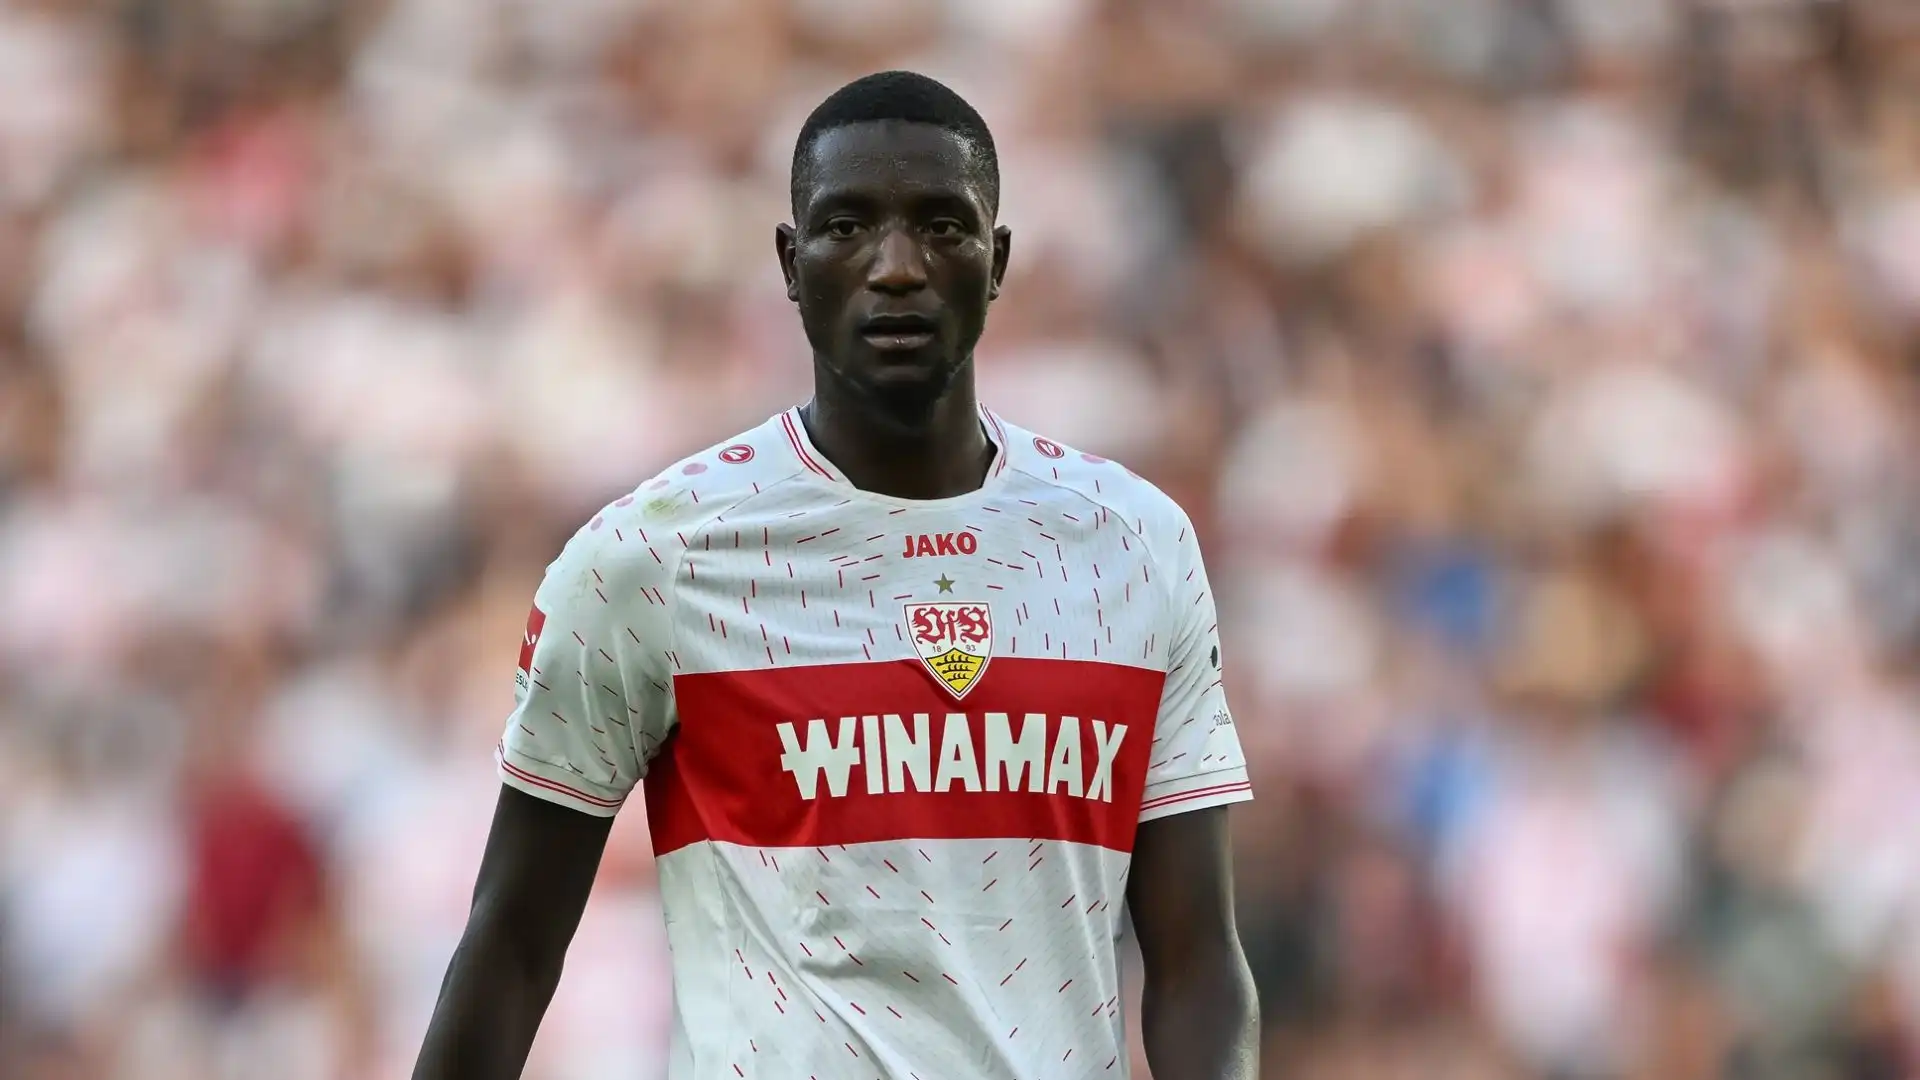 La clausola d'uscita dallo Stoccarda è scaduta, e nonostante l'interesse di diversi club l'attaccante della Guinea resterà in Bundesliga anche nella seconda parte di stagione